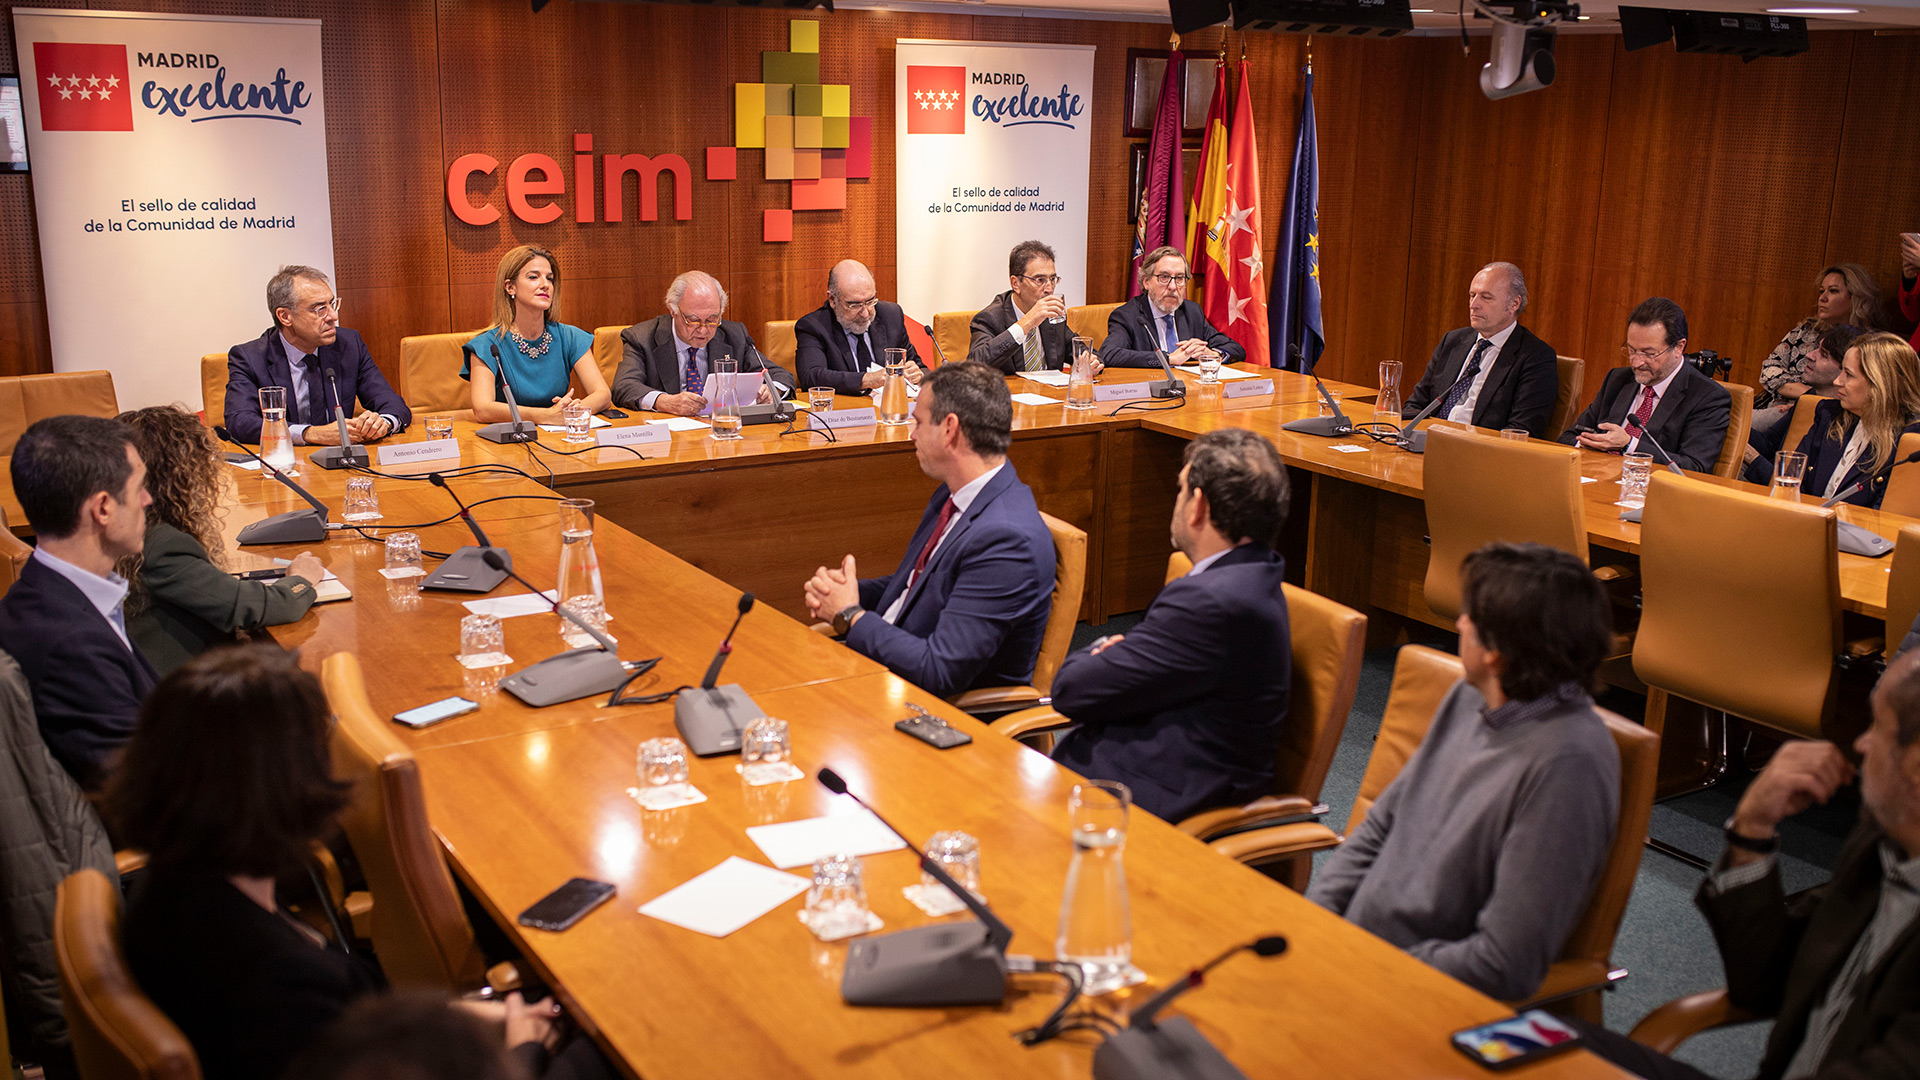 Madrid Excelente apuesta por la colaboración público-privada para mejorar la calidad de las organizaciones